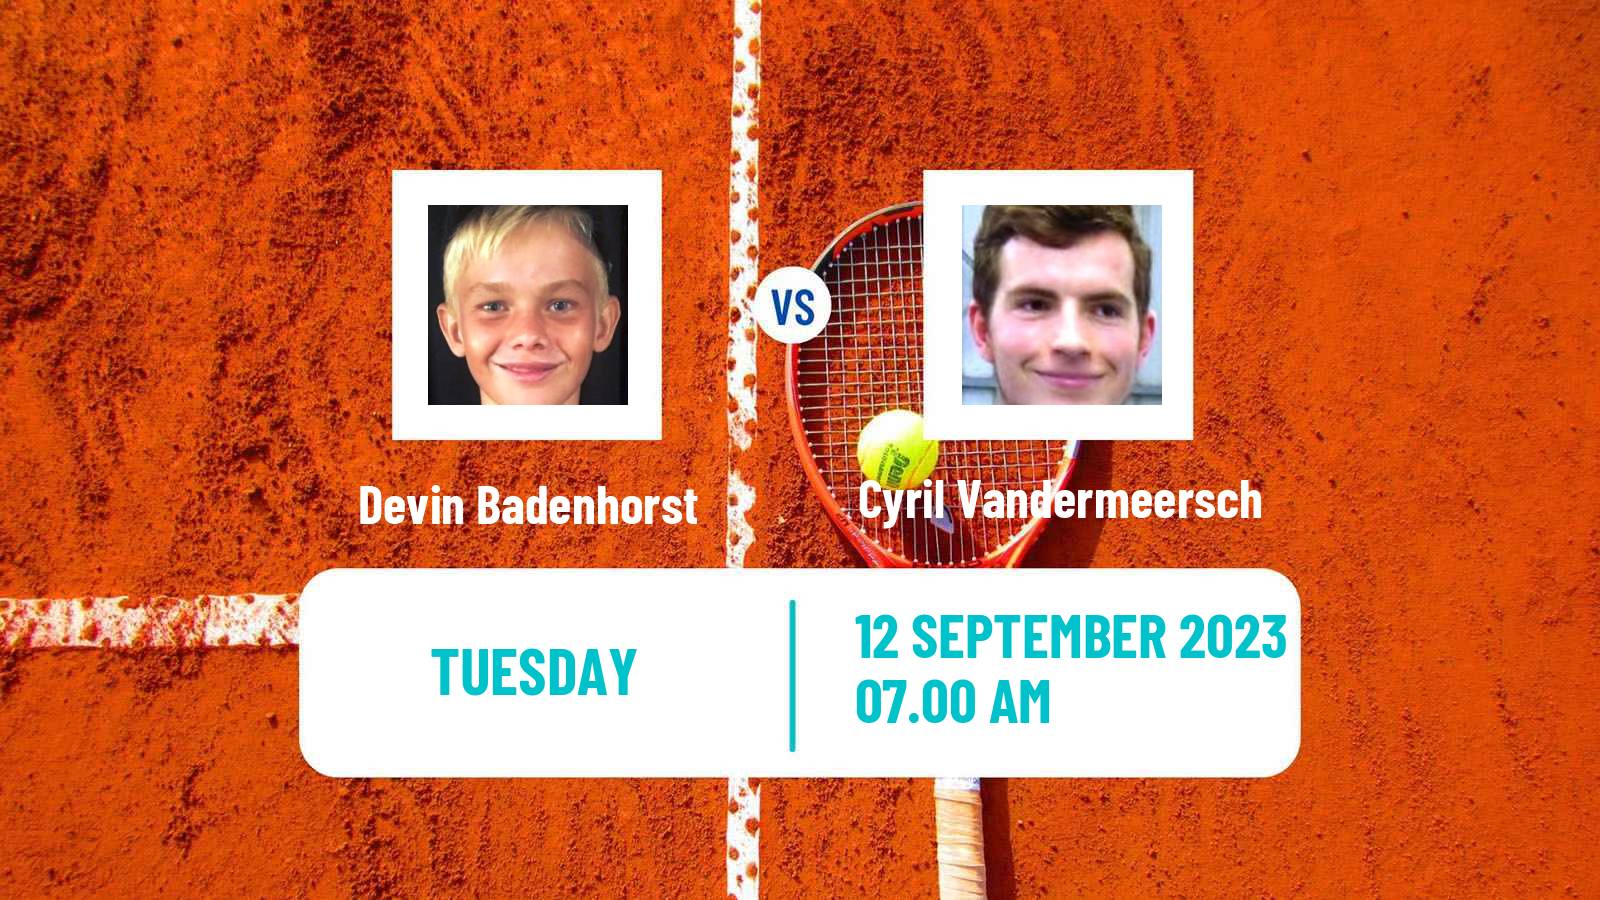 Tennis ITF M25 Monastir 6 Men Devin Badenhorst - Cyril Vandermeersch